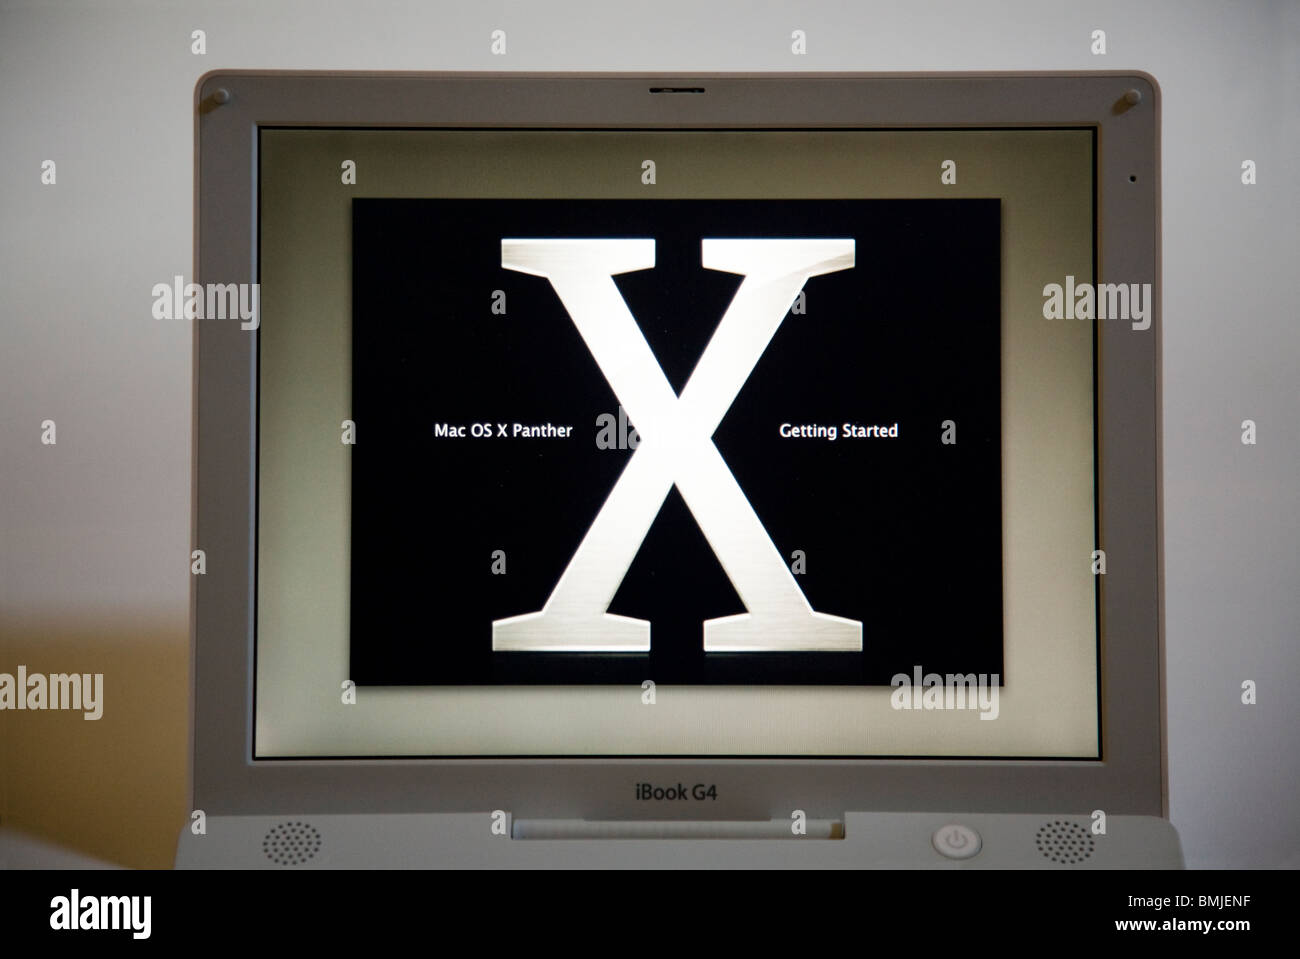 Ein Apple iBook G4 Laptop / lap Top Computerstart / Start-Bildschirm zeigt das OSX Panther-Logo. Stockfoto